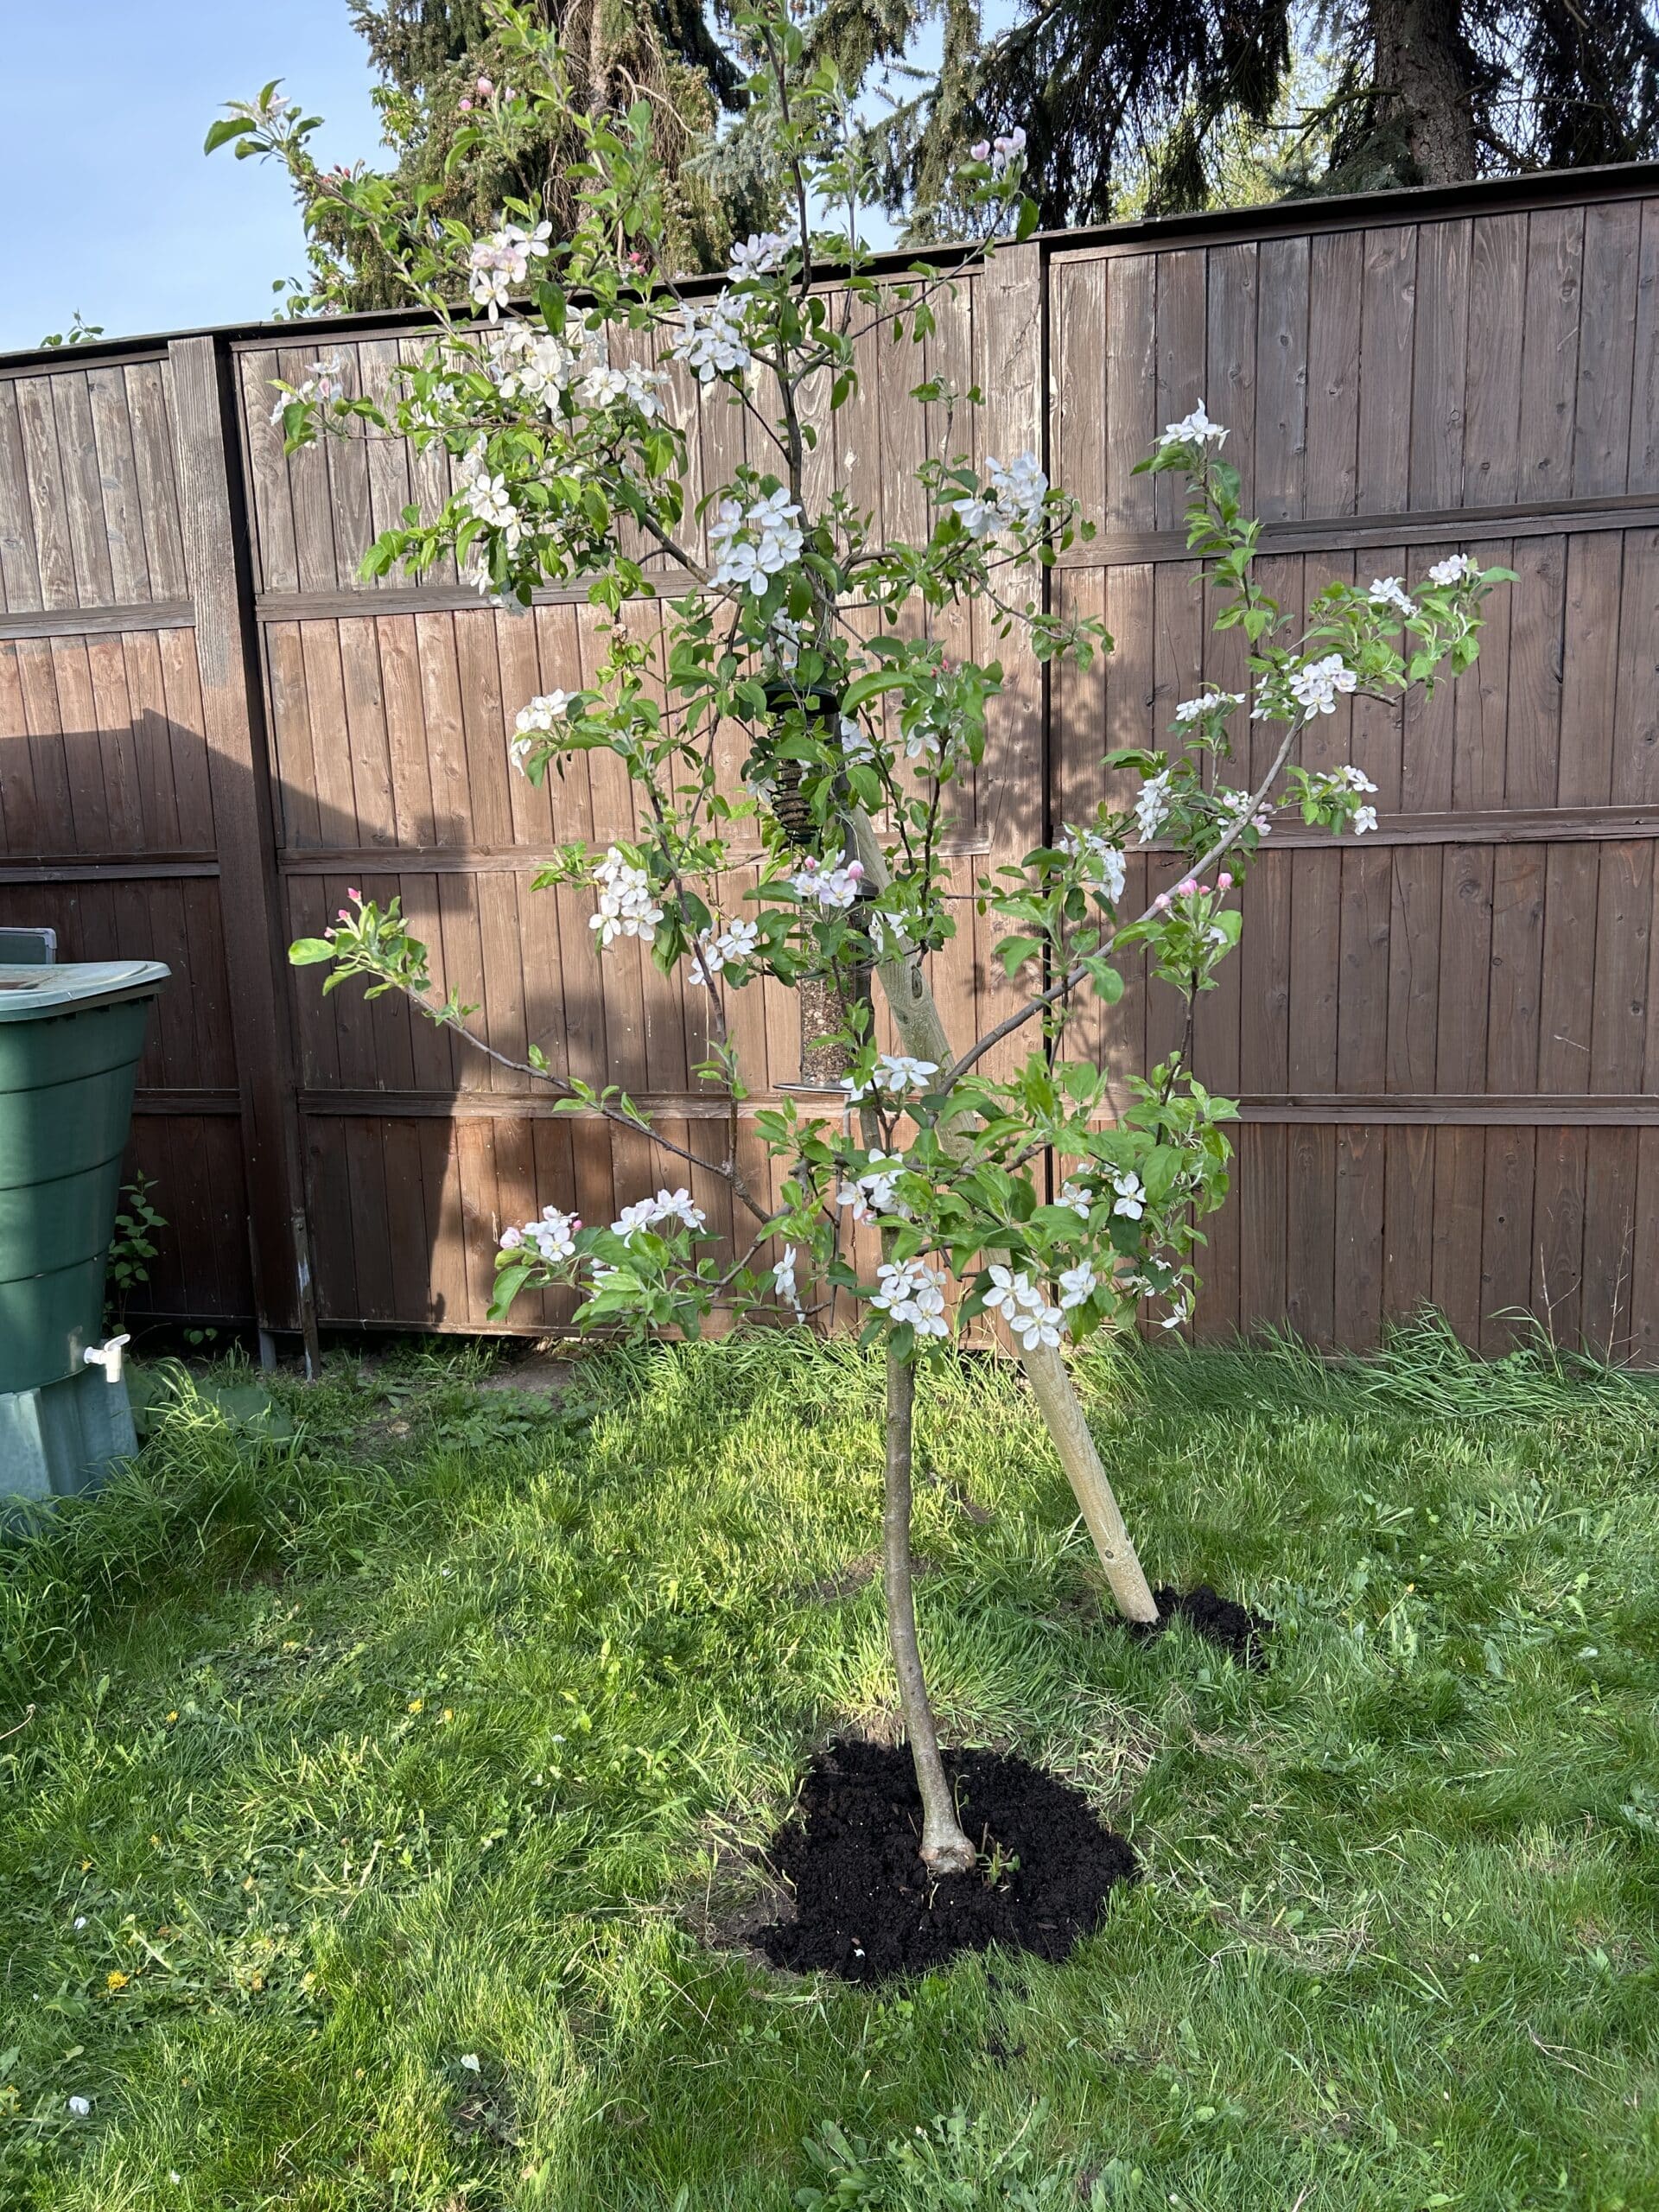 Wir stützen den Apfelbaum, damit die Ernte dieses Jahr großartig wird.